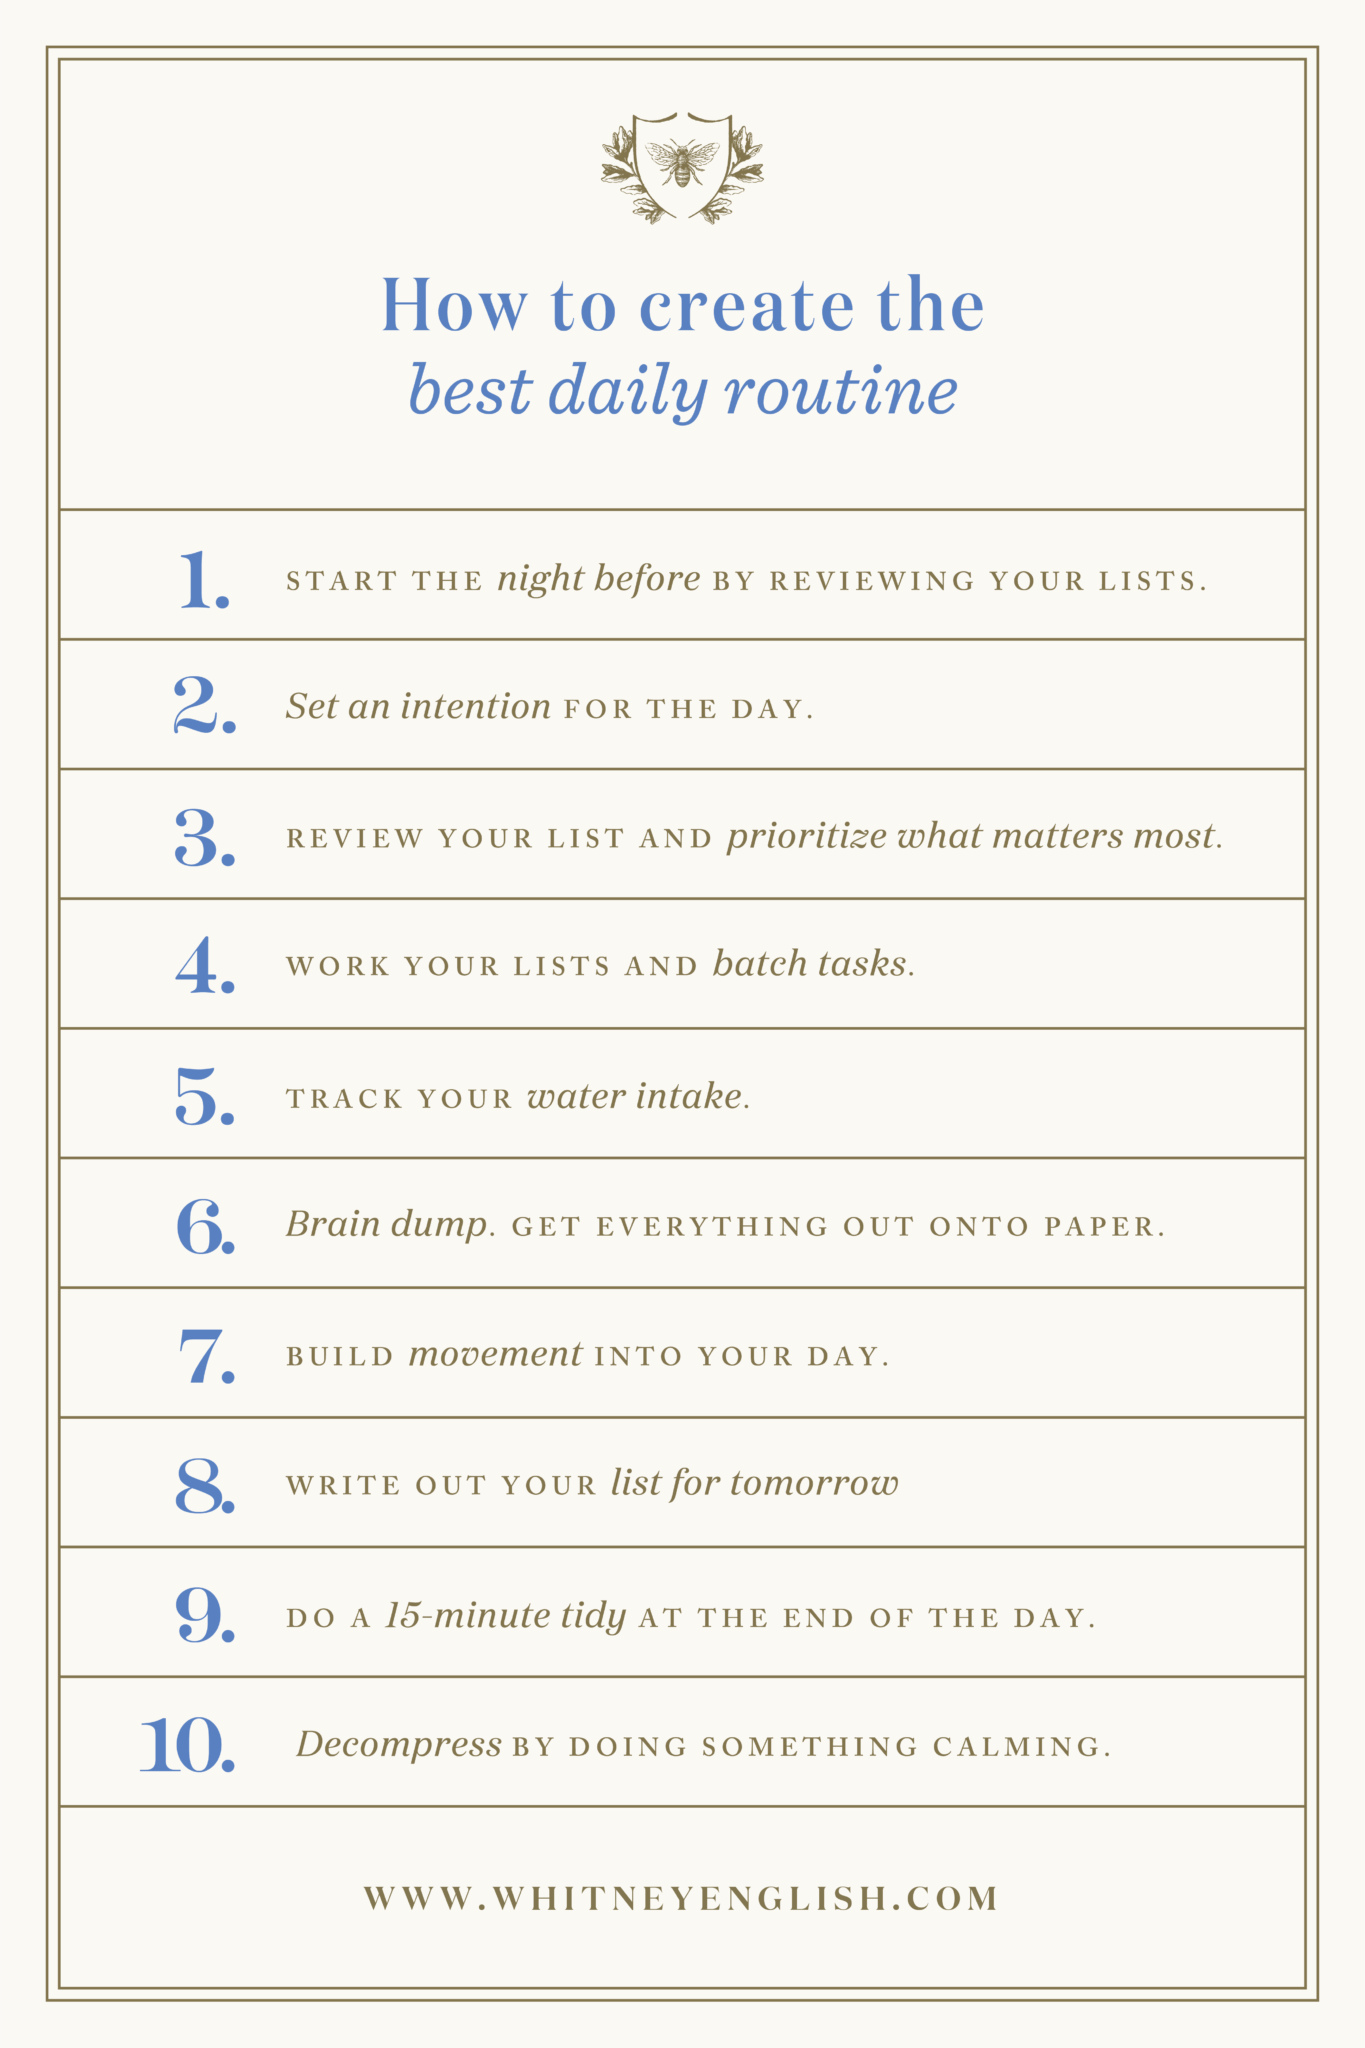 create a daily schedule